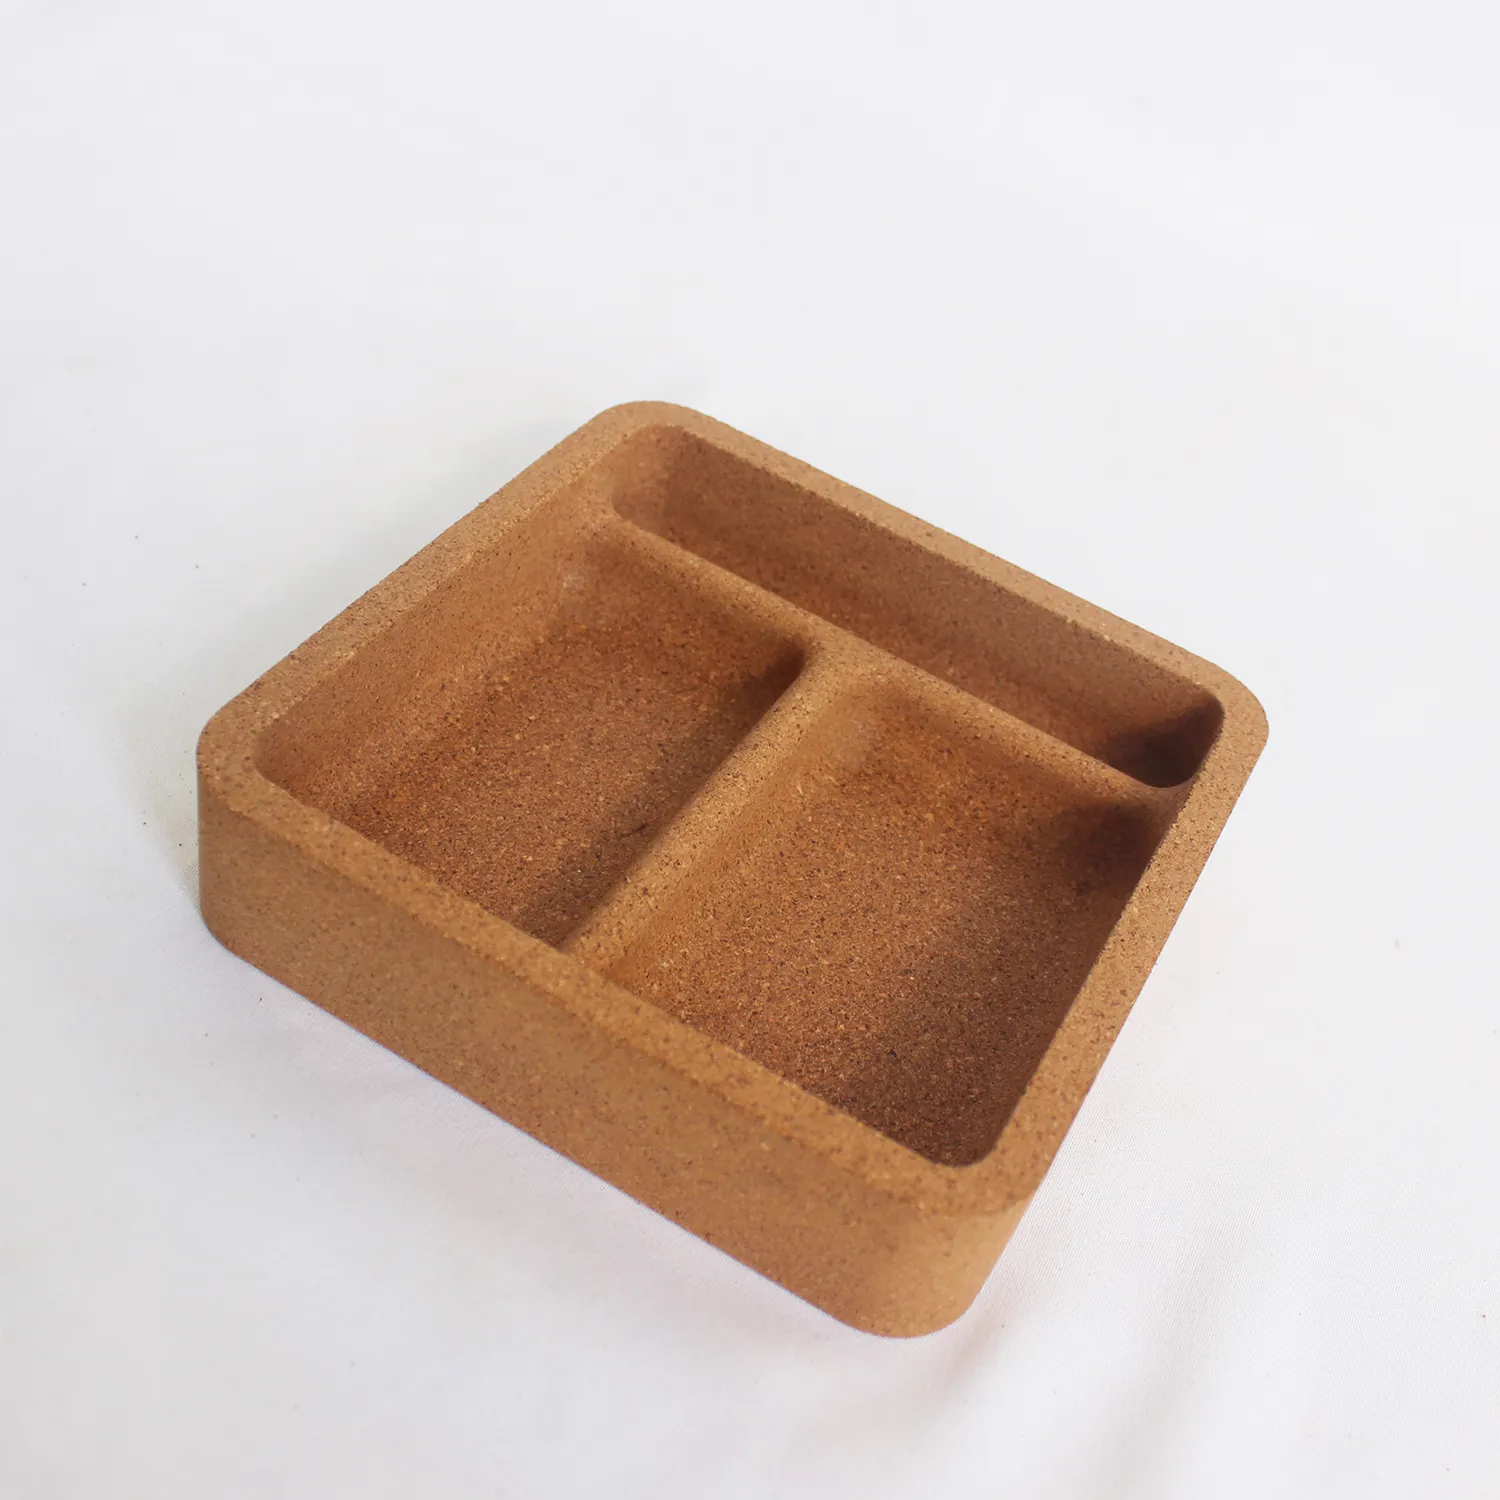 कस्टम कॉर्क नमी-प्रूफ चाय बॉक्स कॉर्क ज्वेल केस कॉर्क छोटा बॉक्स